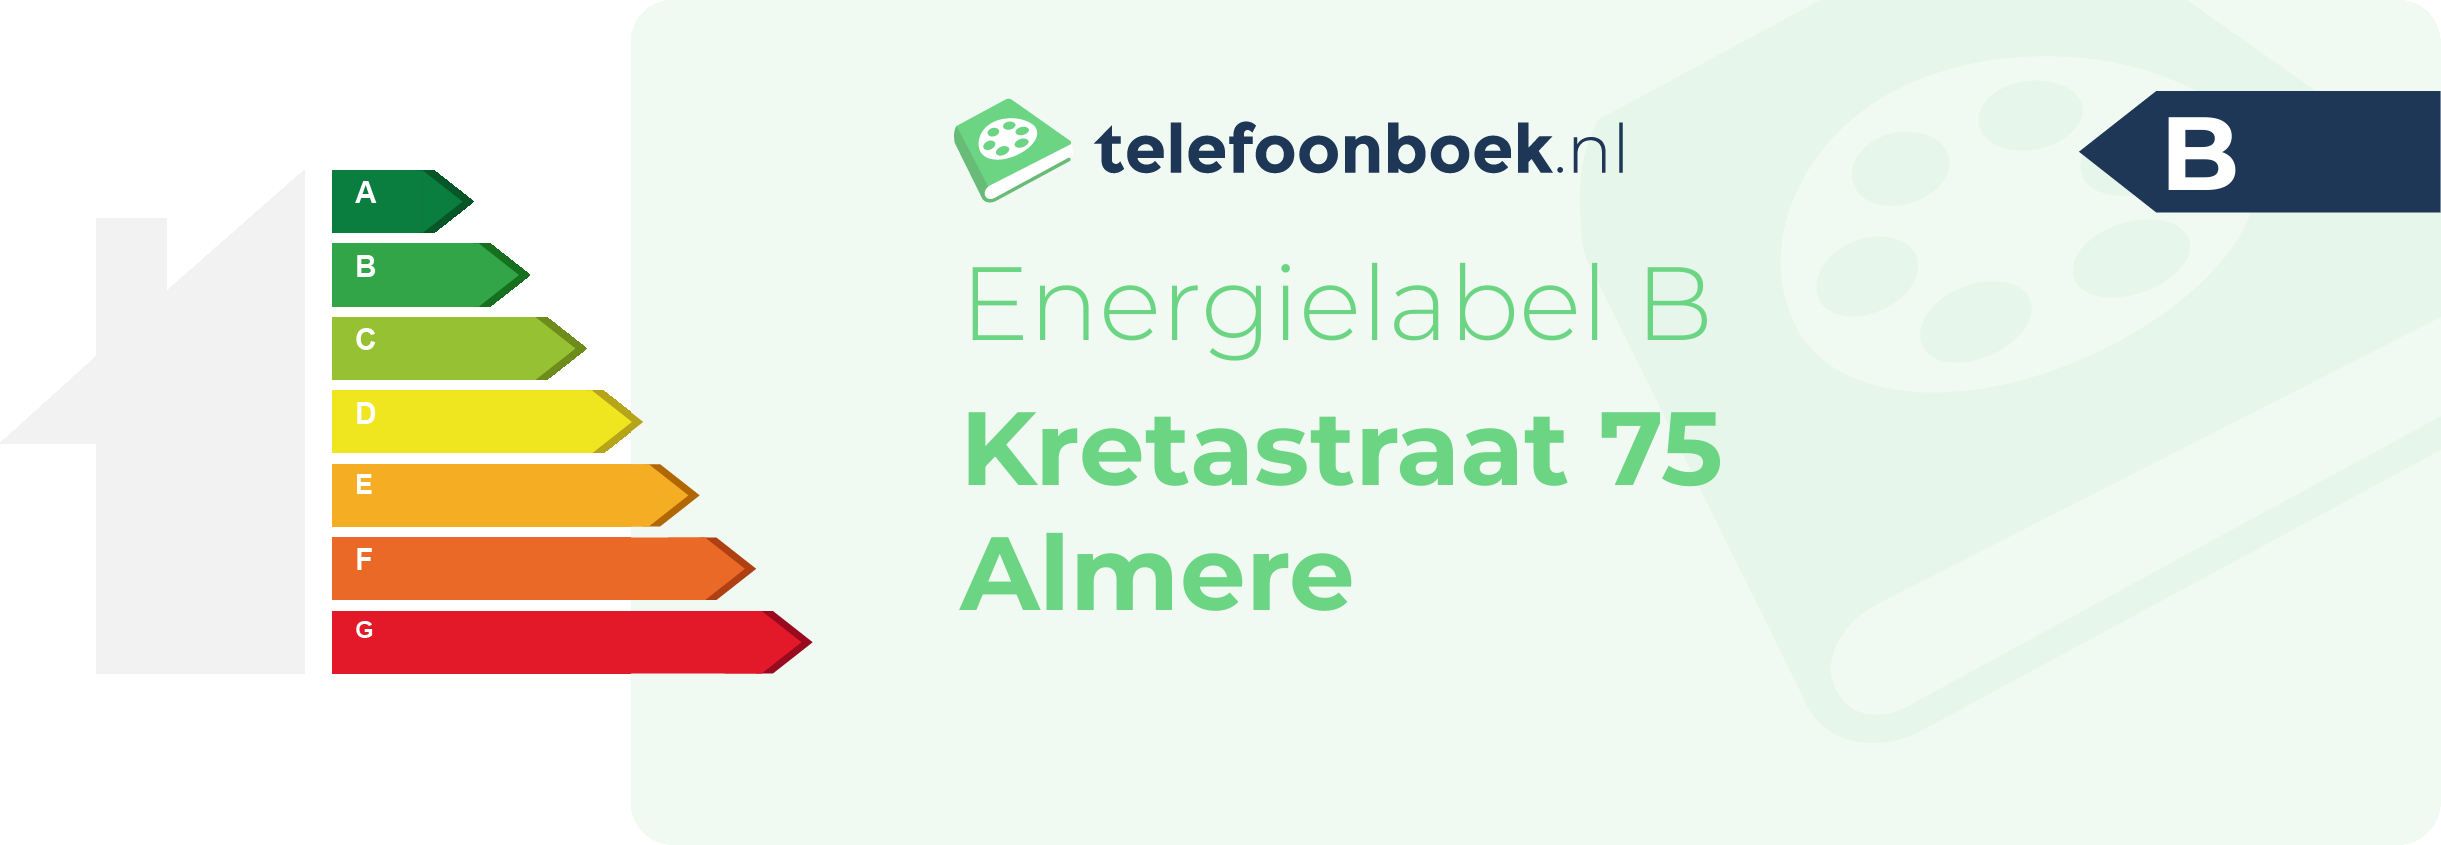 Energielabel Kretastraat 75 Almere